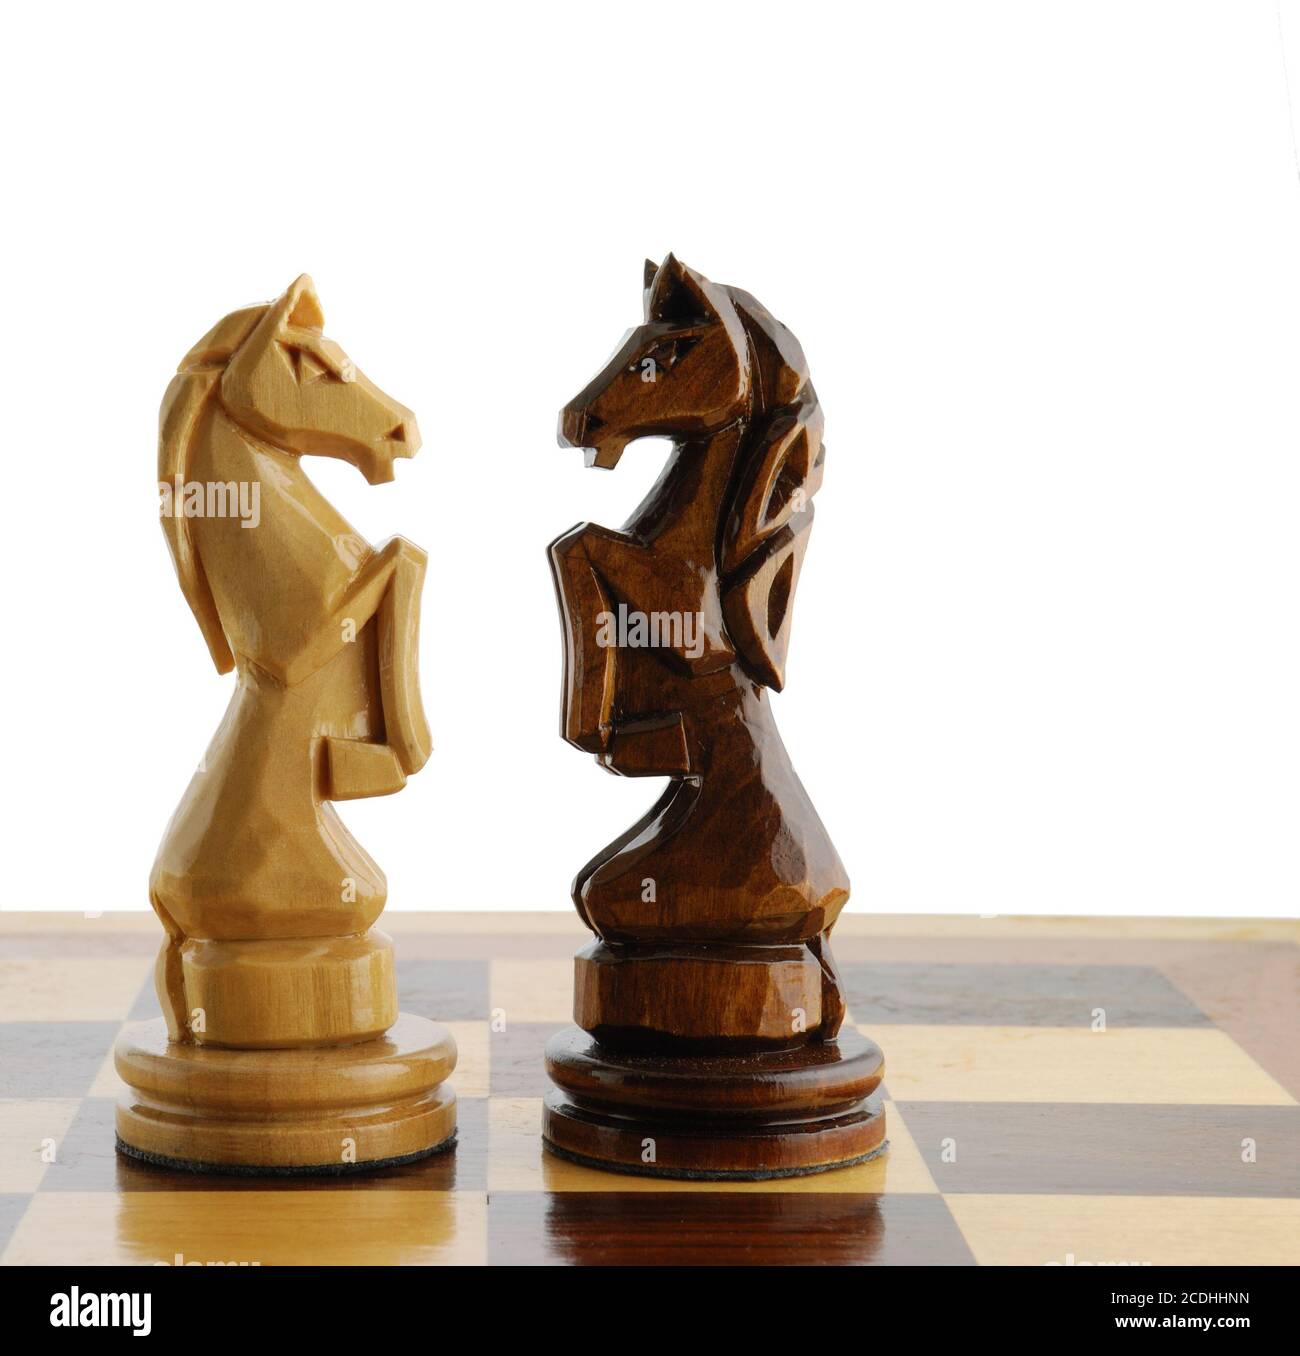 2 коня шахматы. Шахматная фигура конь. Шахматный конь резной из дерева. Конь из шахмат. Шахматы конь скульптура.